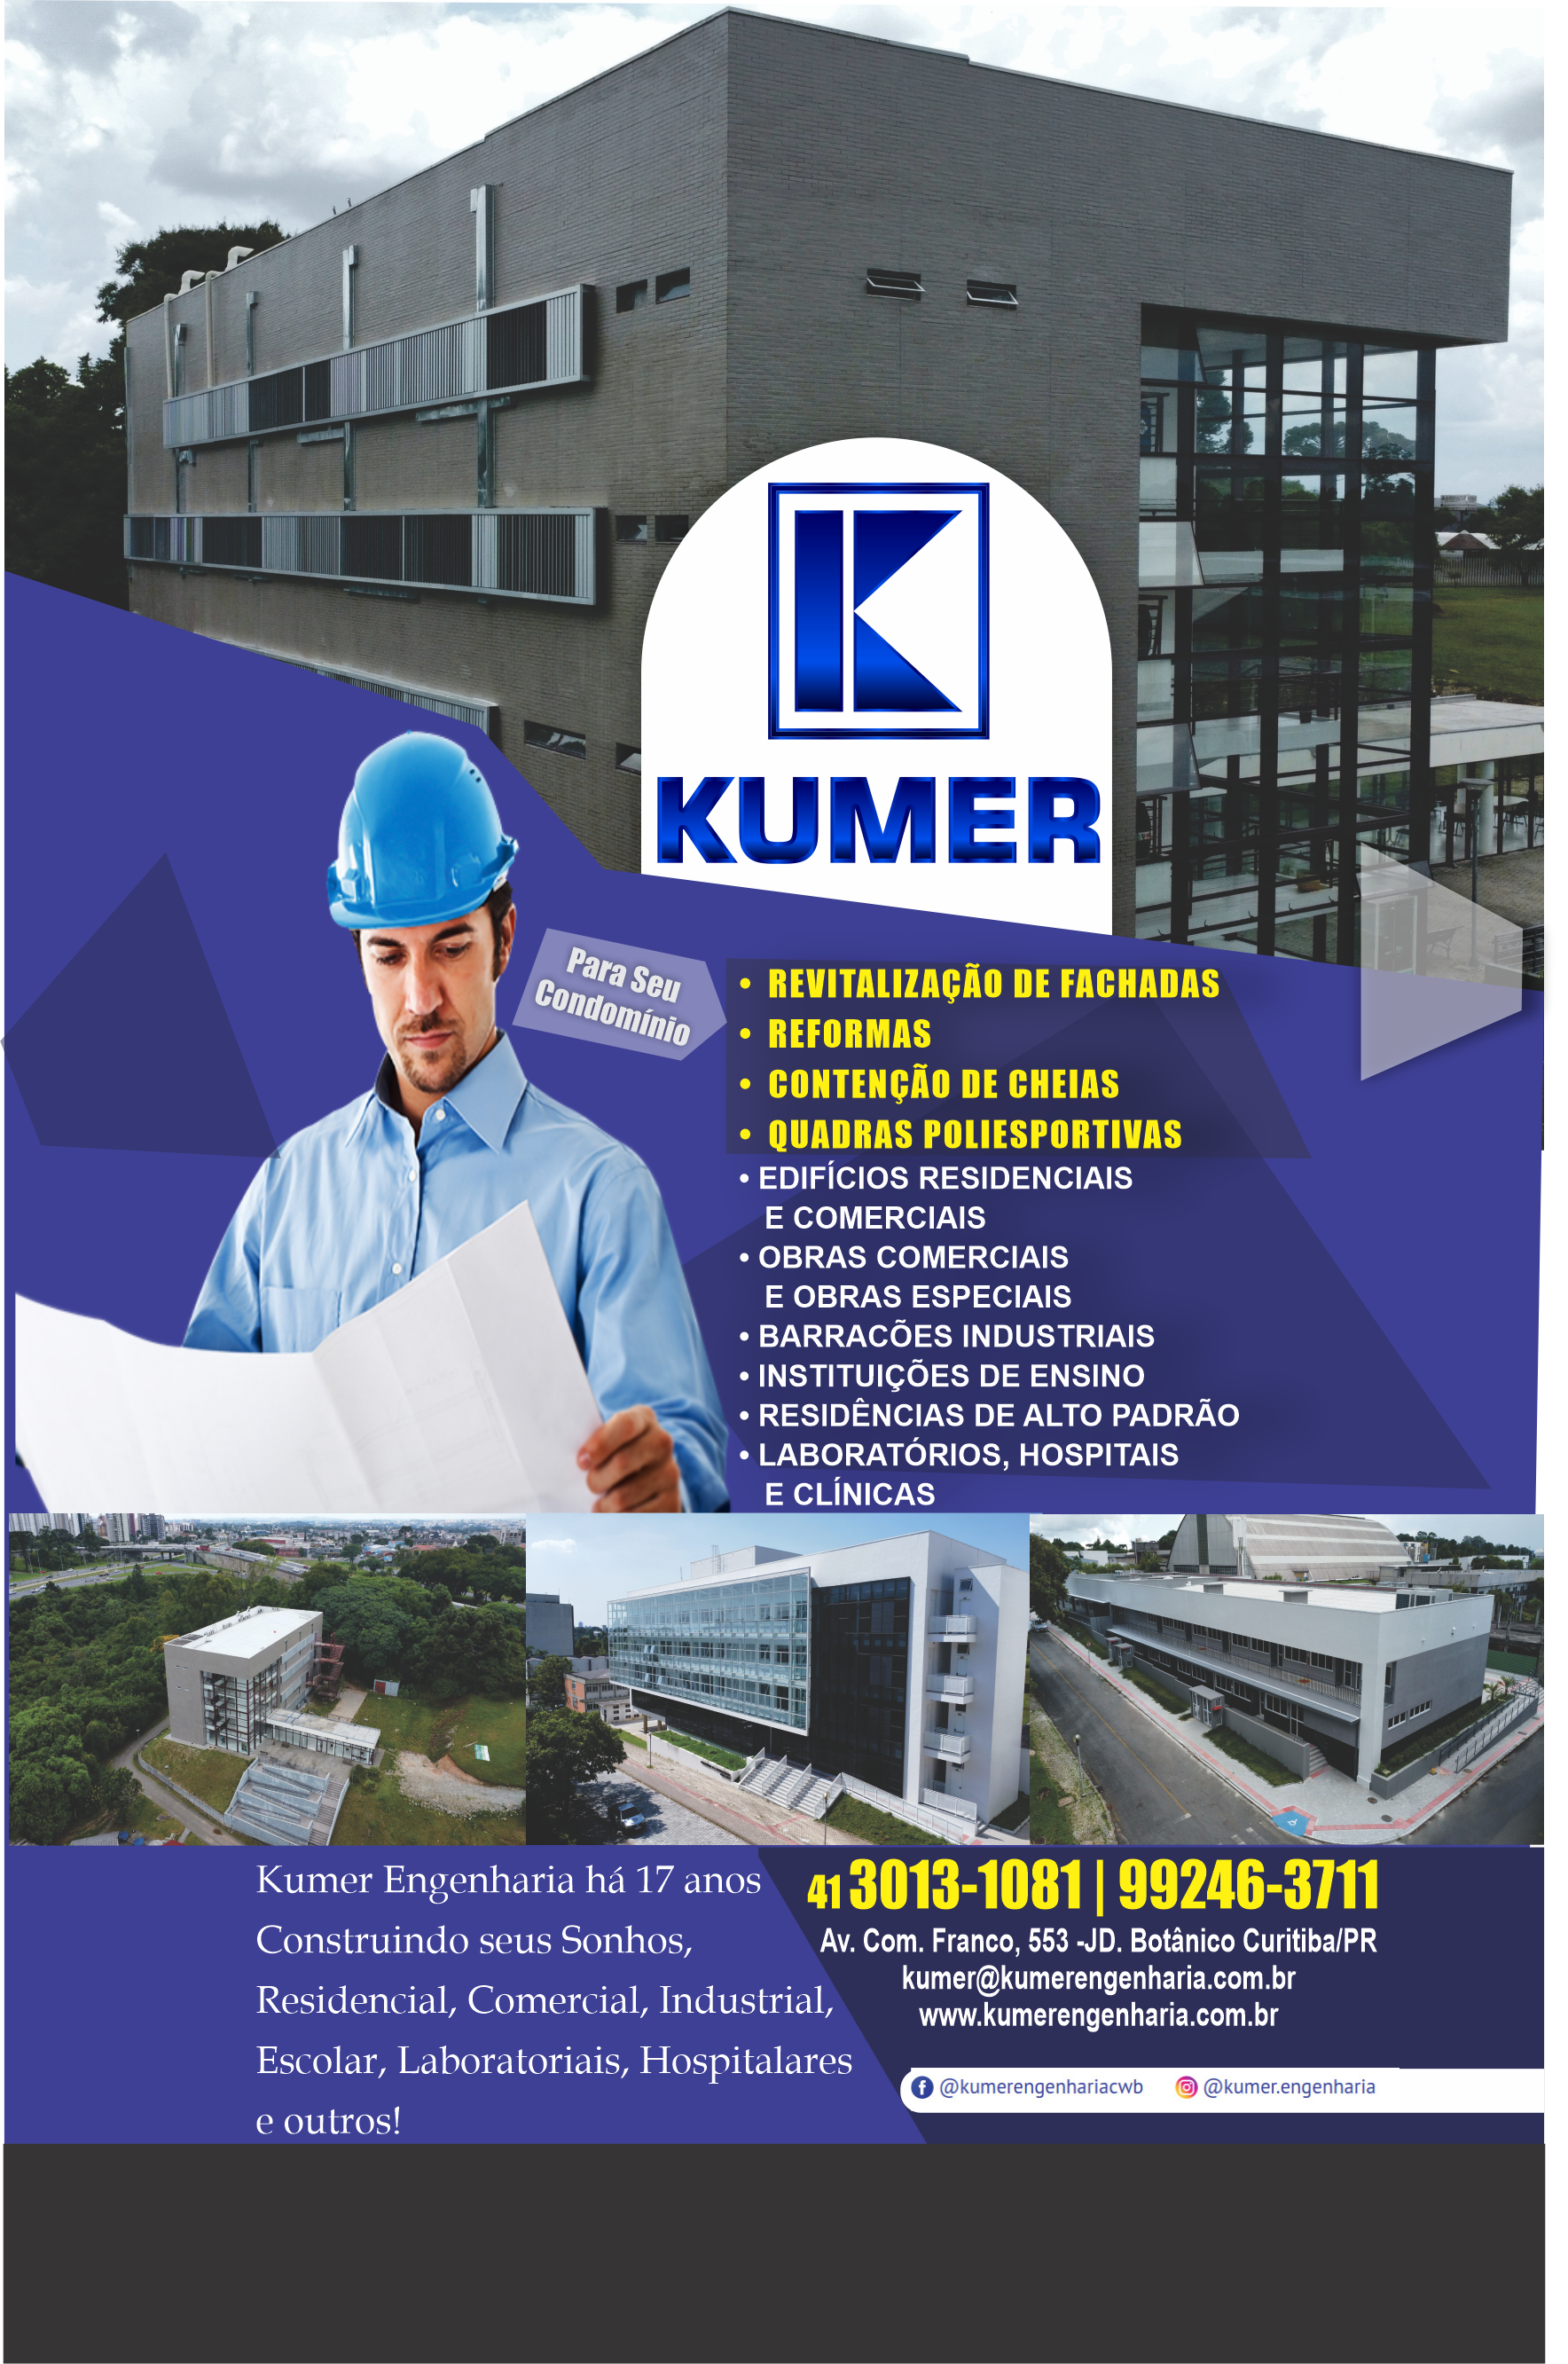  Kumer Engenharia      AVENIDA COMENDADOR FRANCO, 553, CURITIBA - PR  Fones: (41) 99246-3711 /